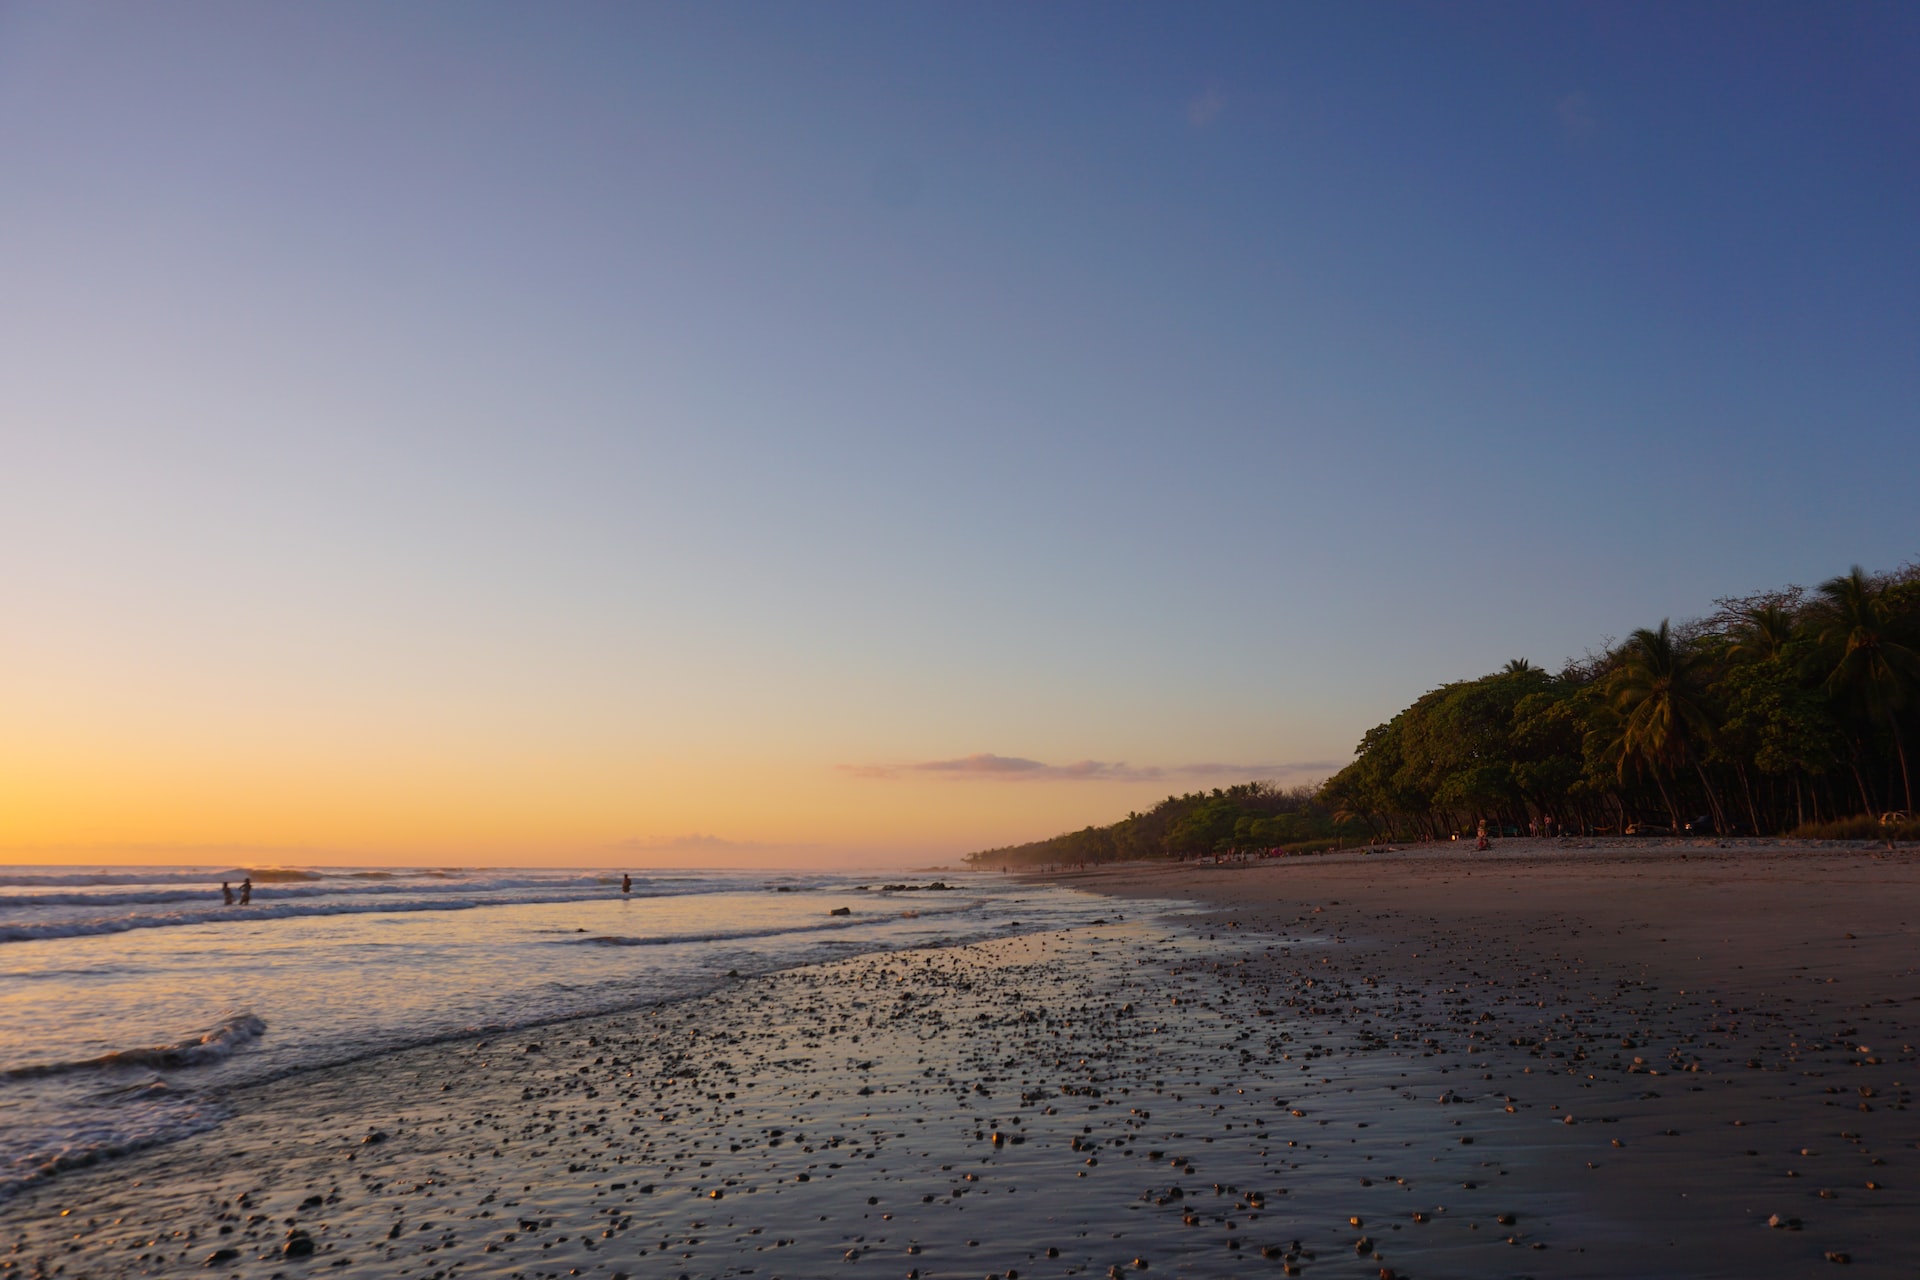 Top 5 Things To Do In Santa Teresa Costa Rica